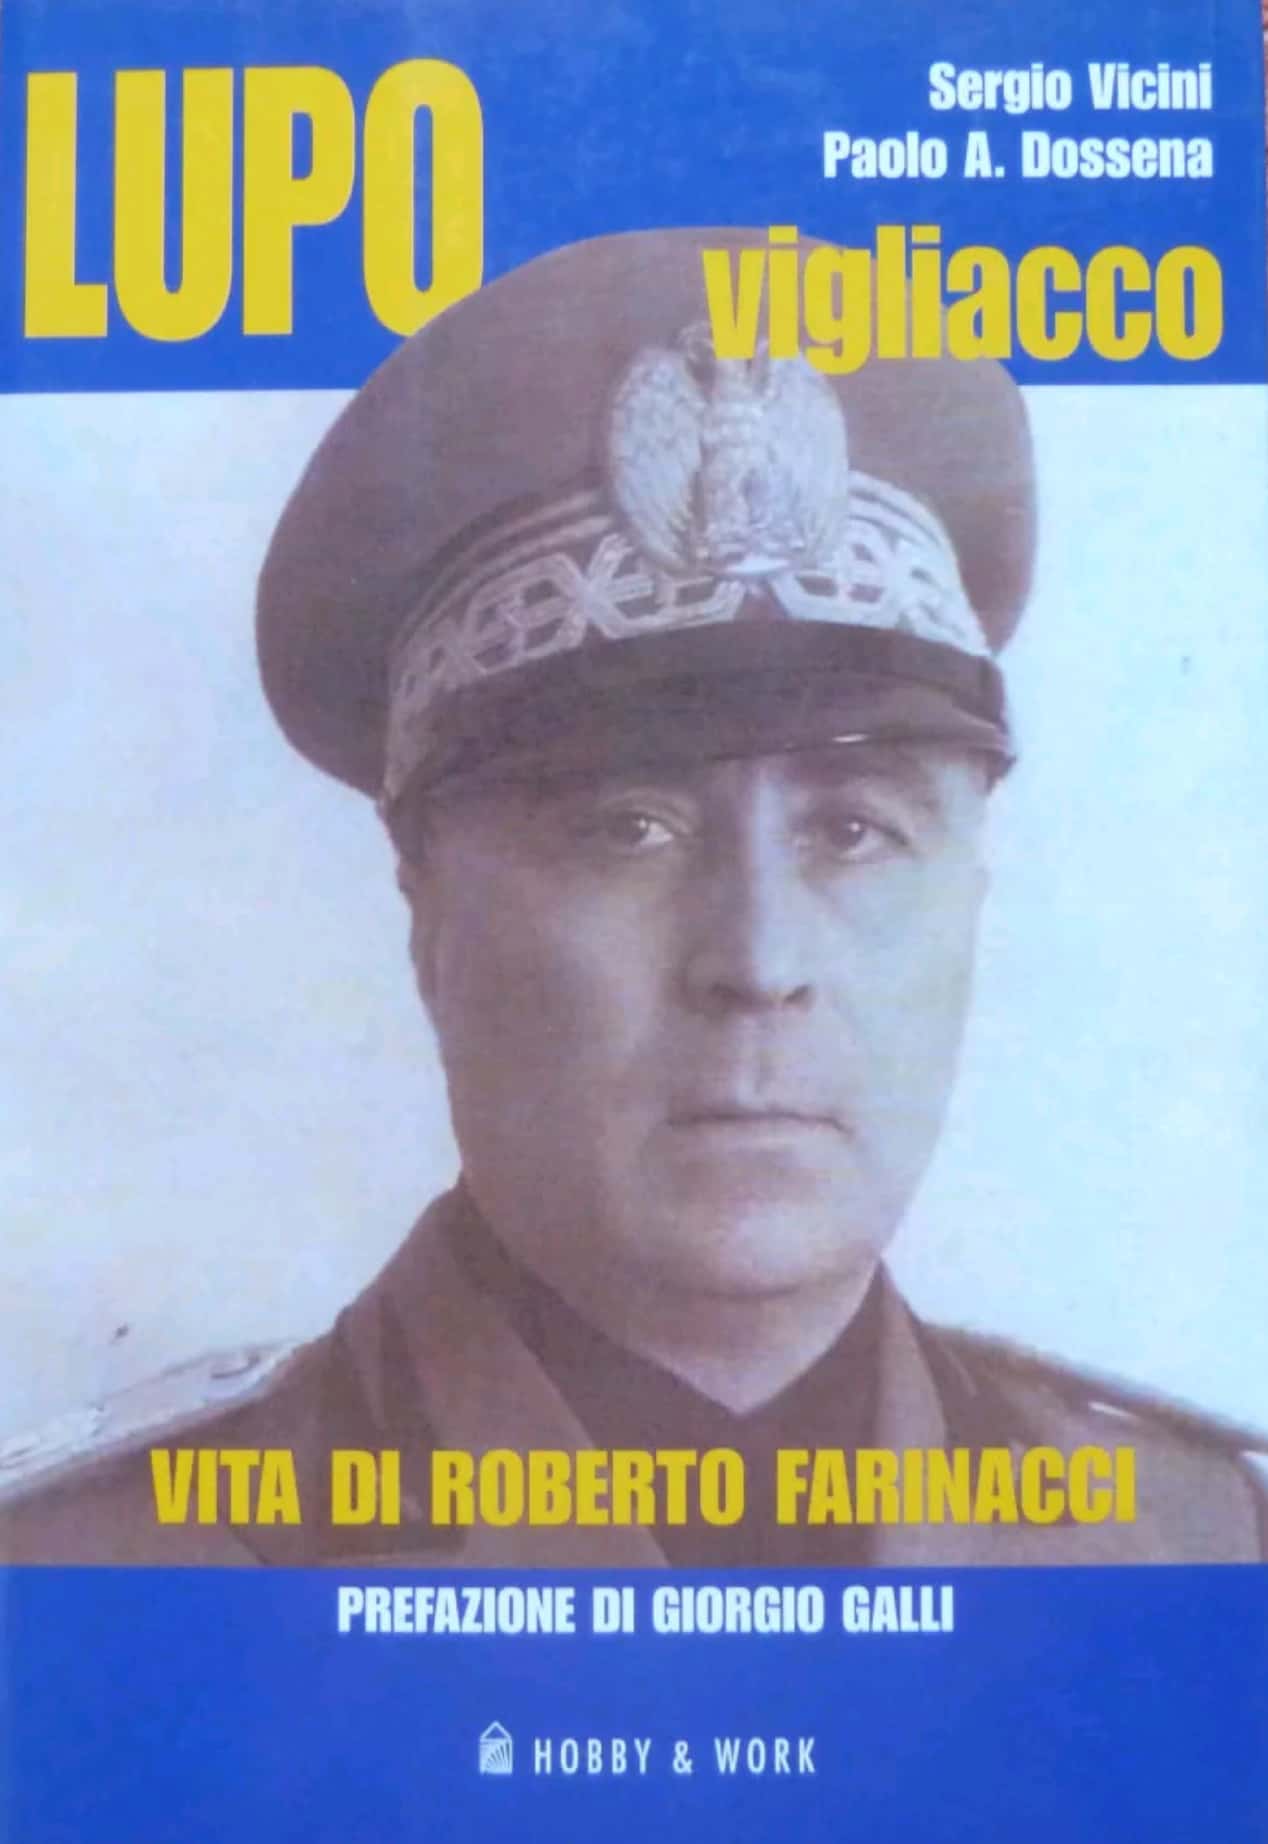 Il raro “Lupo vigliacco: vita di Roberto Farinacci” di Vicini & Dossena è in vendita su eBay